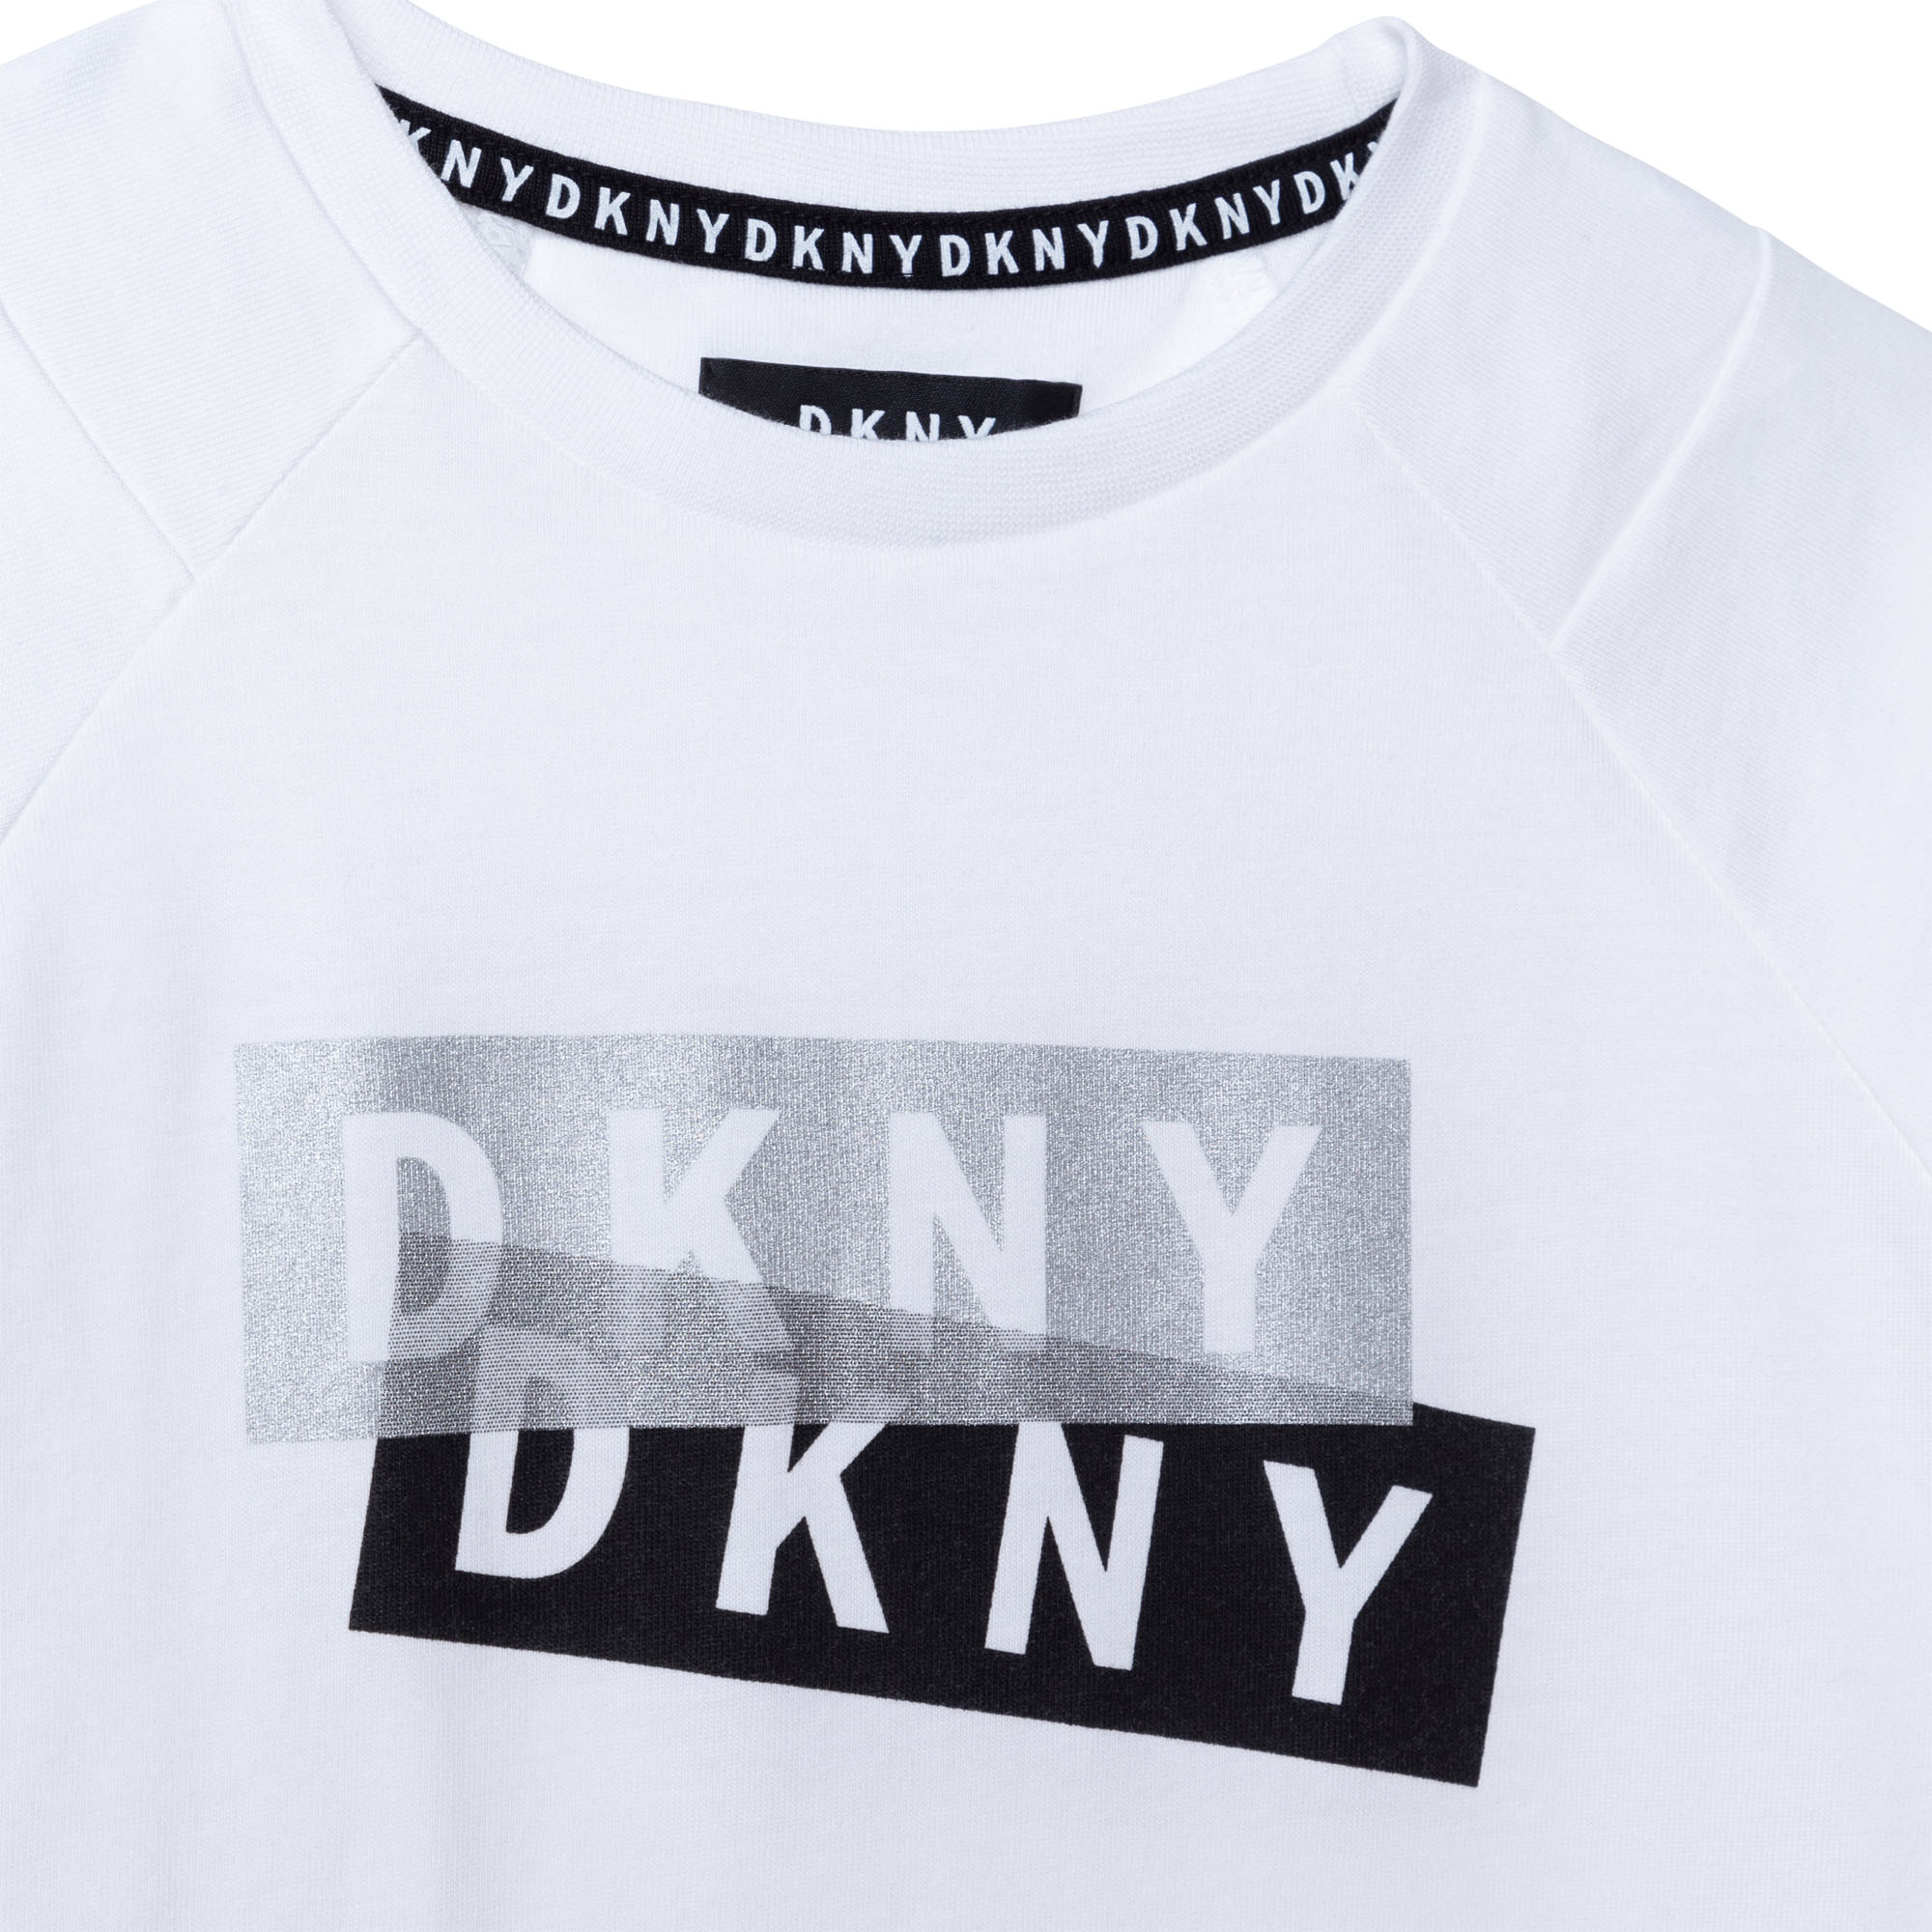 T-SHIRT DKNY Für JUNGE